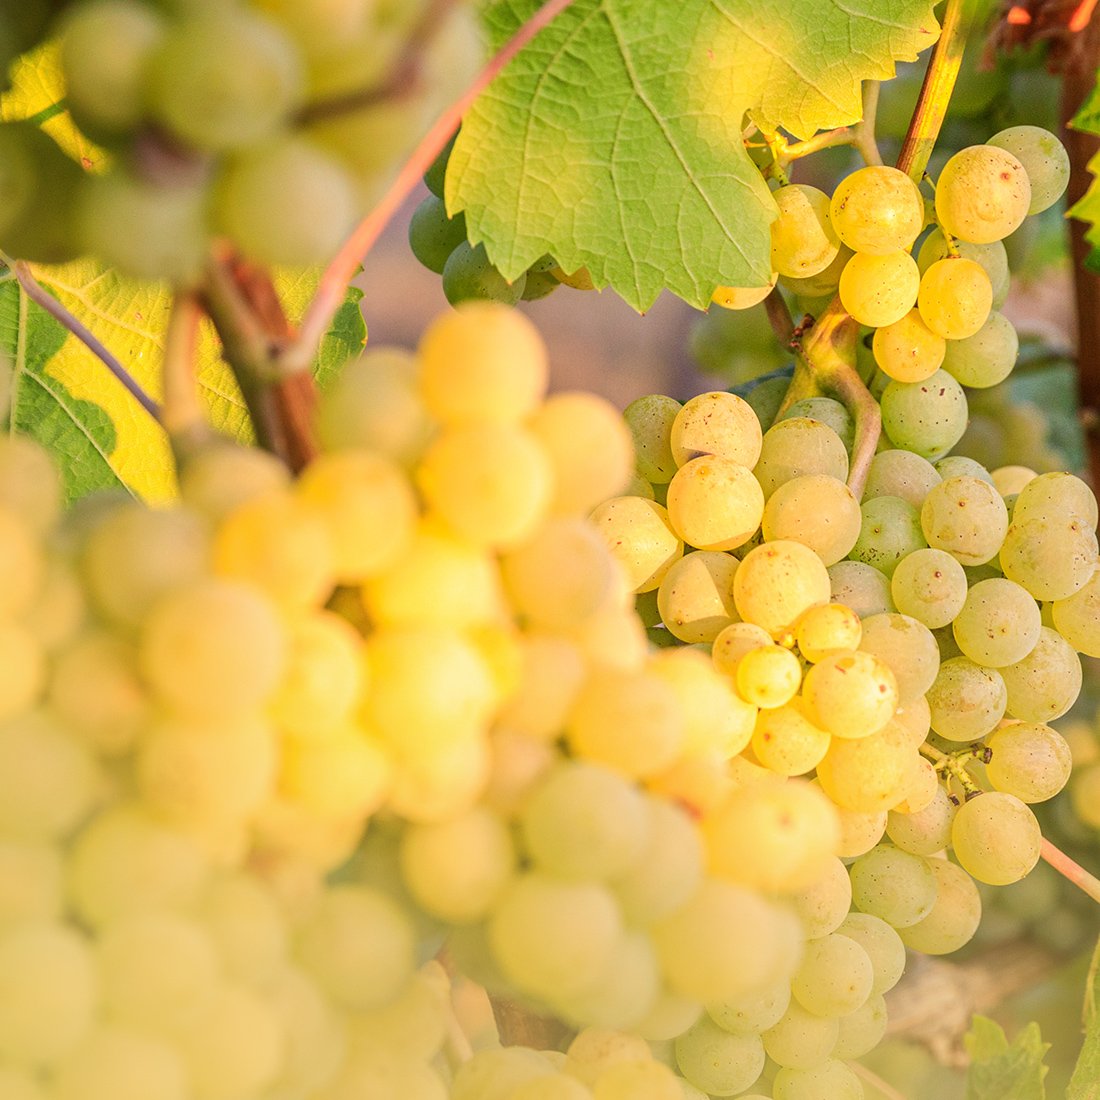 Goldgelbe Trauben sorgen für paradiesische Weine im Weinparadies Franken